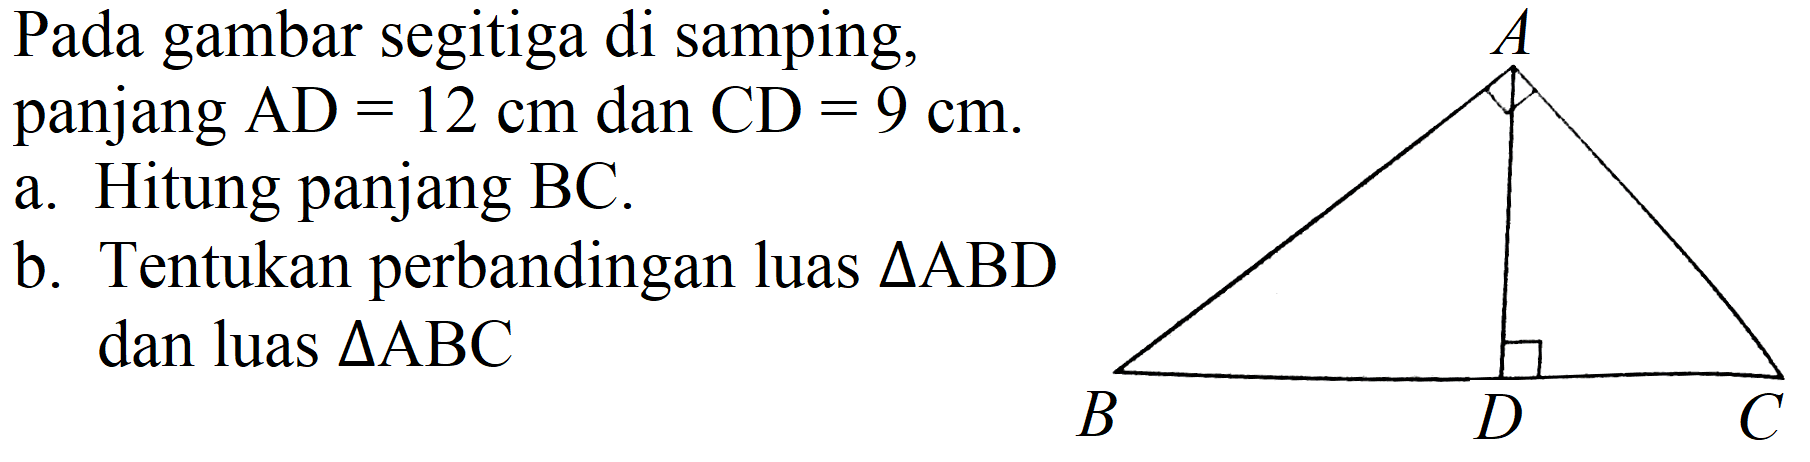 Pada gambar segitiga disamping.
panjang AD=12 cm dan CD 9 cm
a. Hitung panjang BC
b. Tentukan perbandingan luas segitiga ABD dan luas segitiga ABC
A B D C